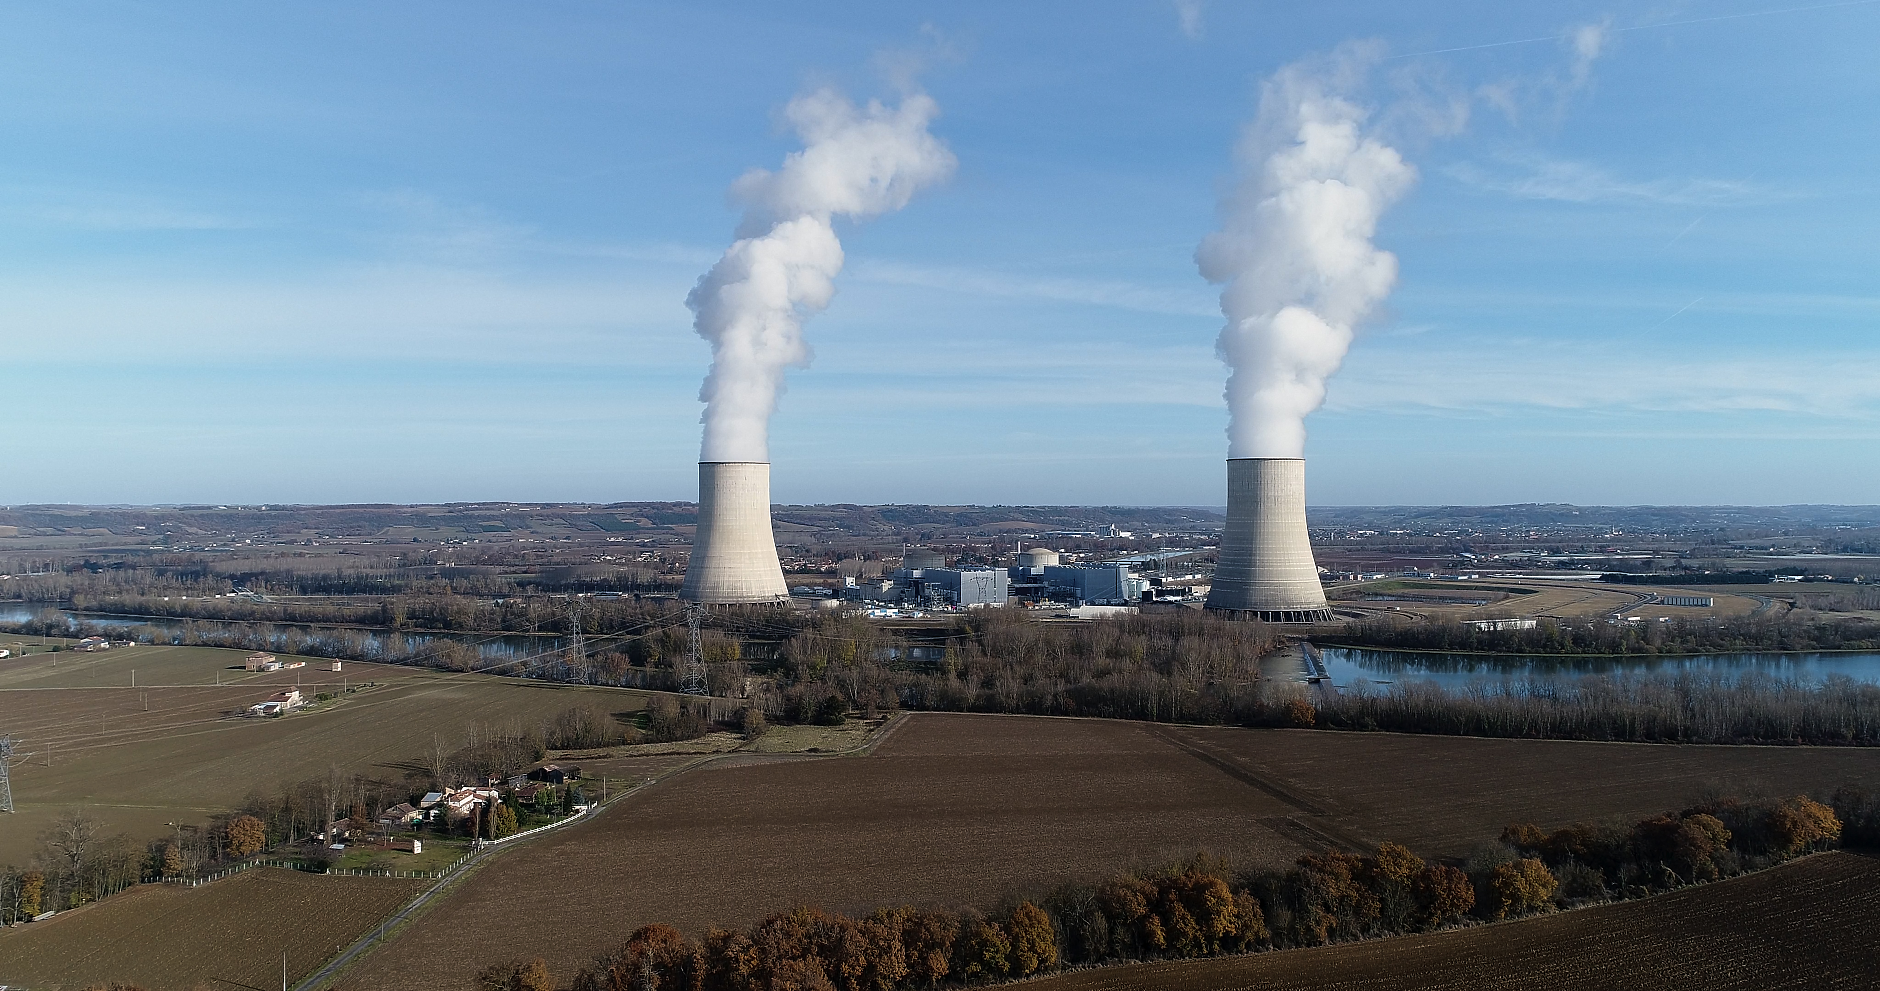 Анализатори: Франция трябва да запази поне две от централите си на въглища до 2035 г.